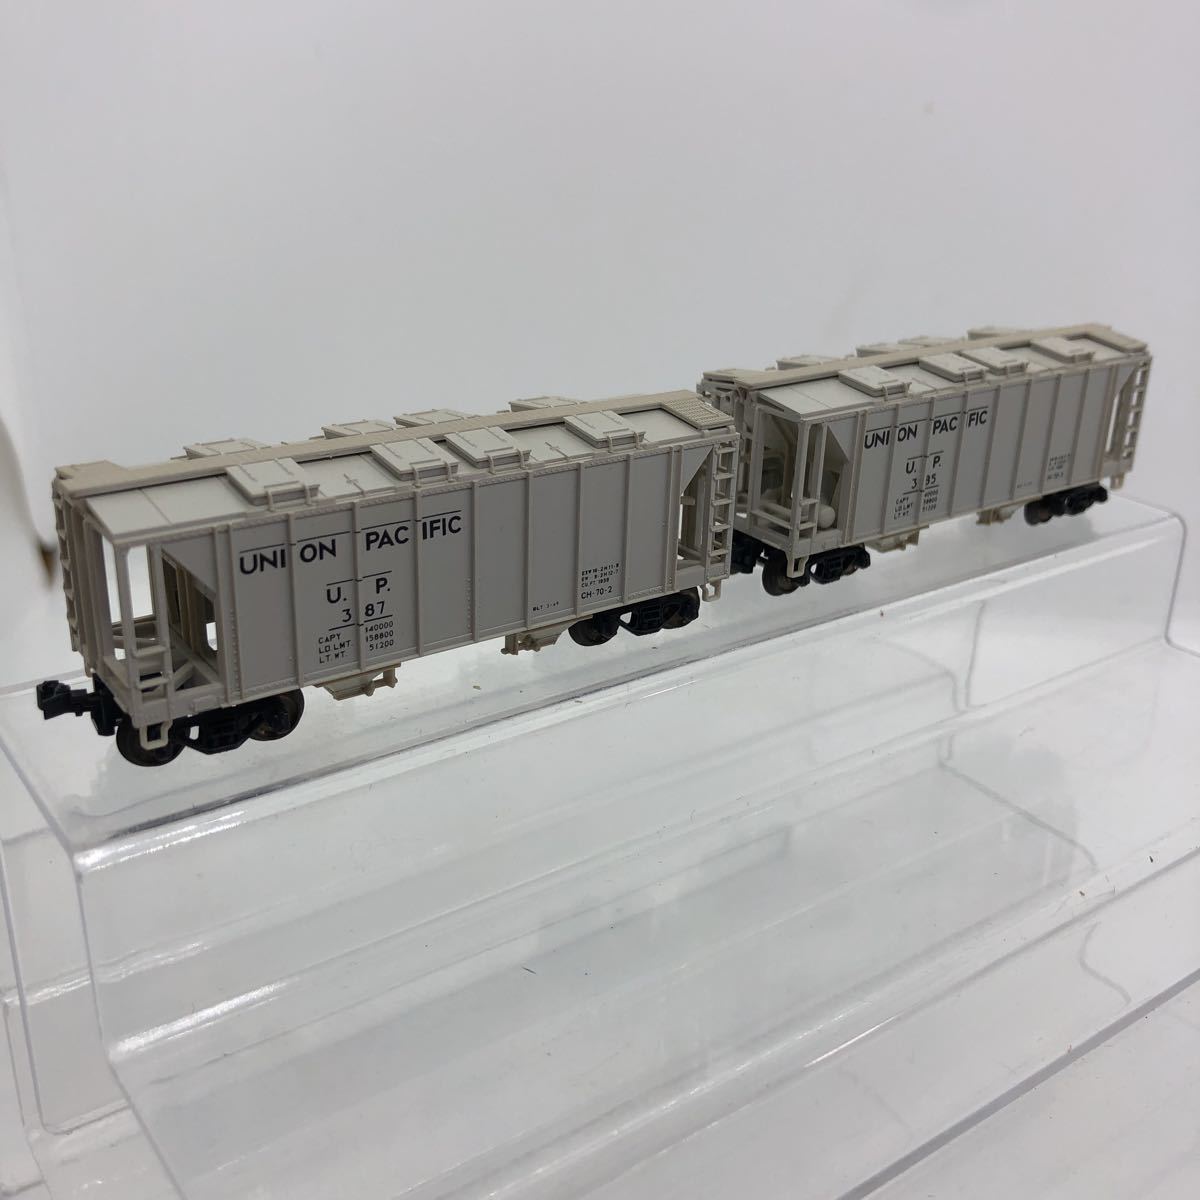 NゲージKATOユニオンパシフィック動力車両と貨物車3両-